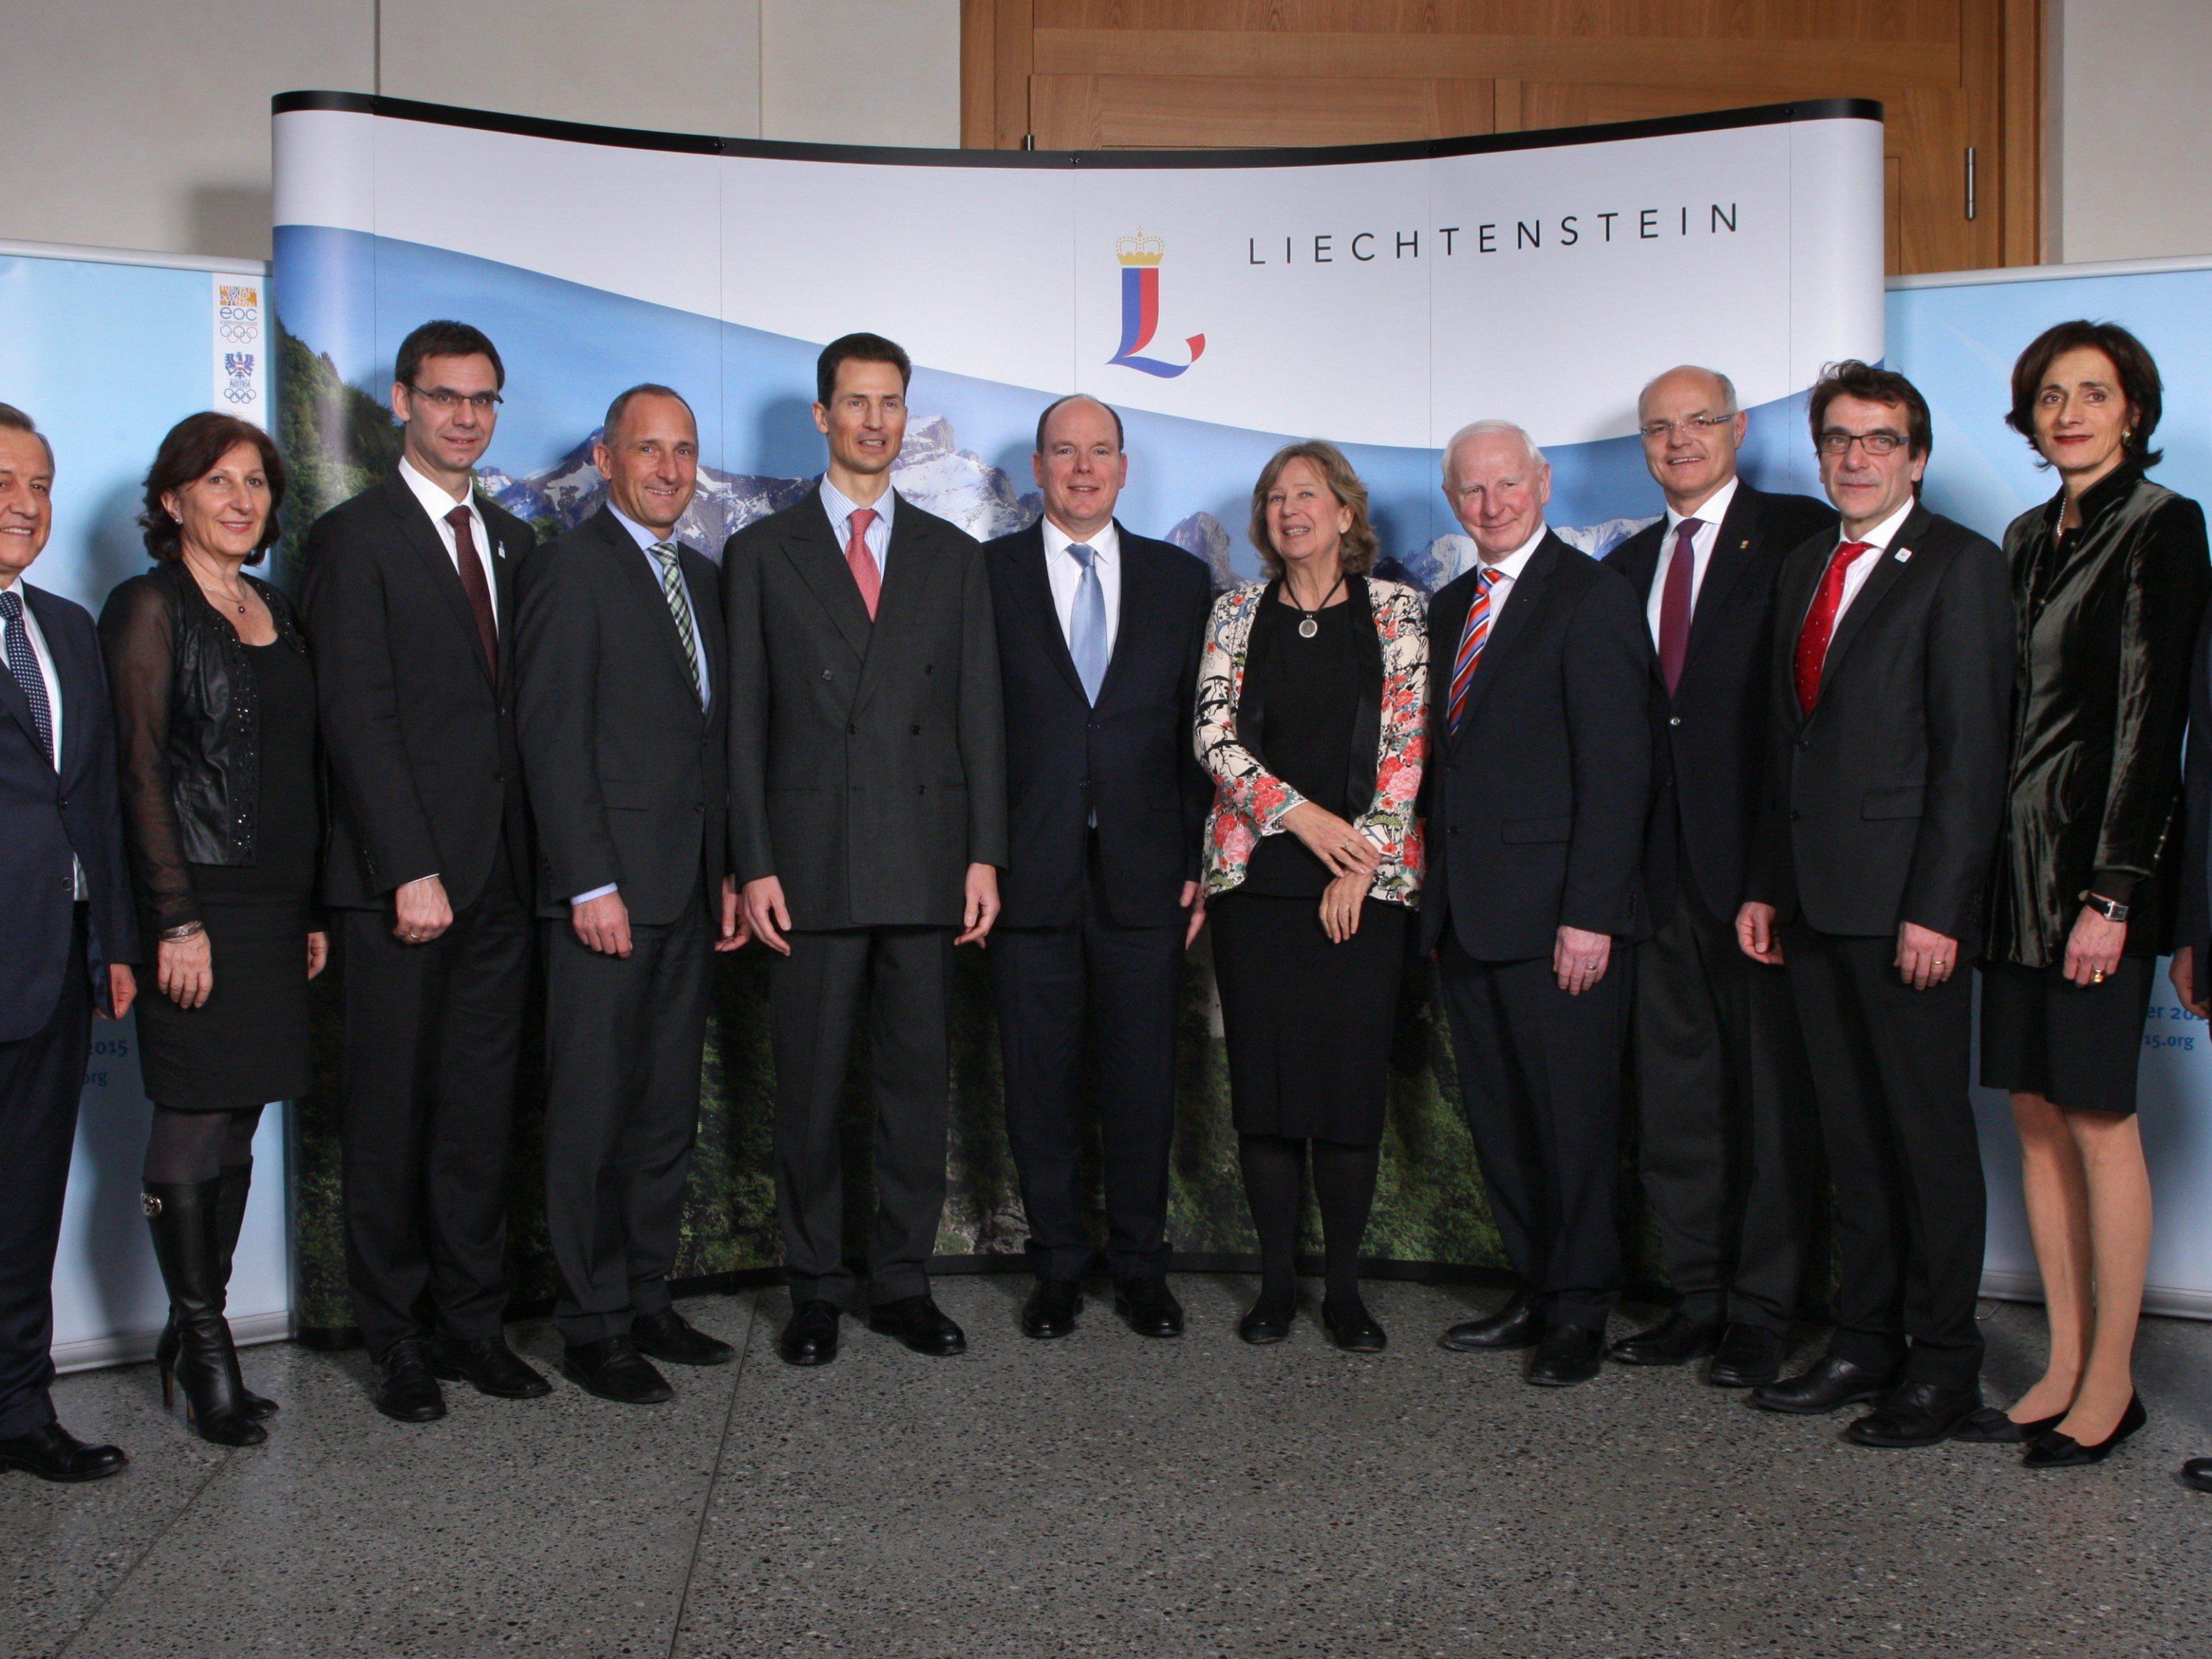 Fürstlicher Empfang in Liechtenstein für die EYOF Familie.